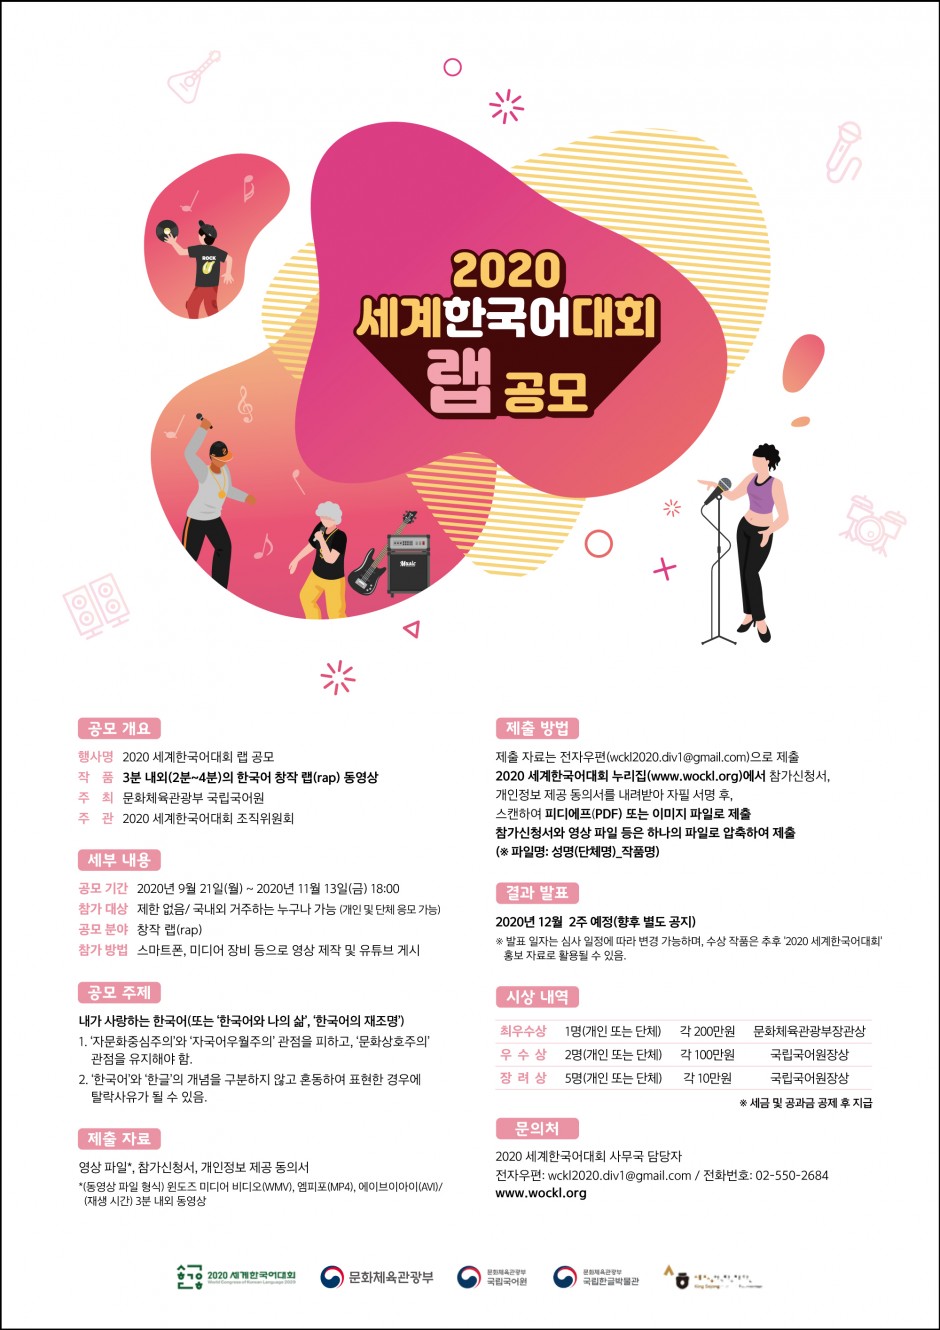 7. 2020 세계한국어대회 한국어 랩 공모 벽붙이